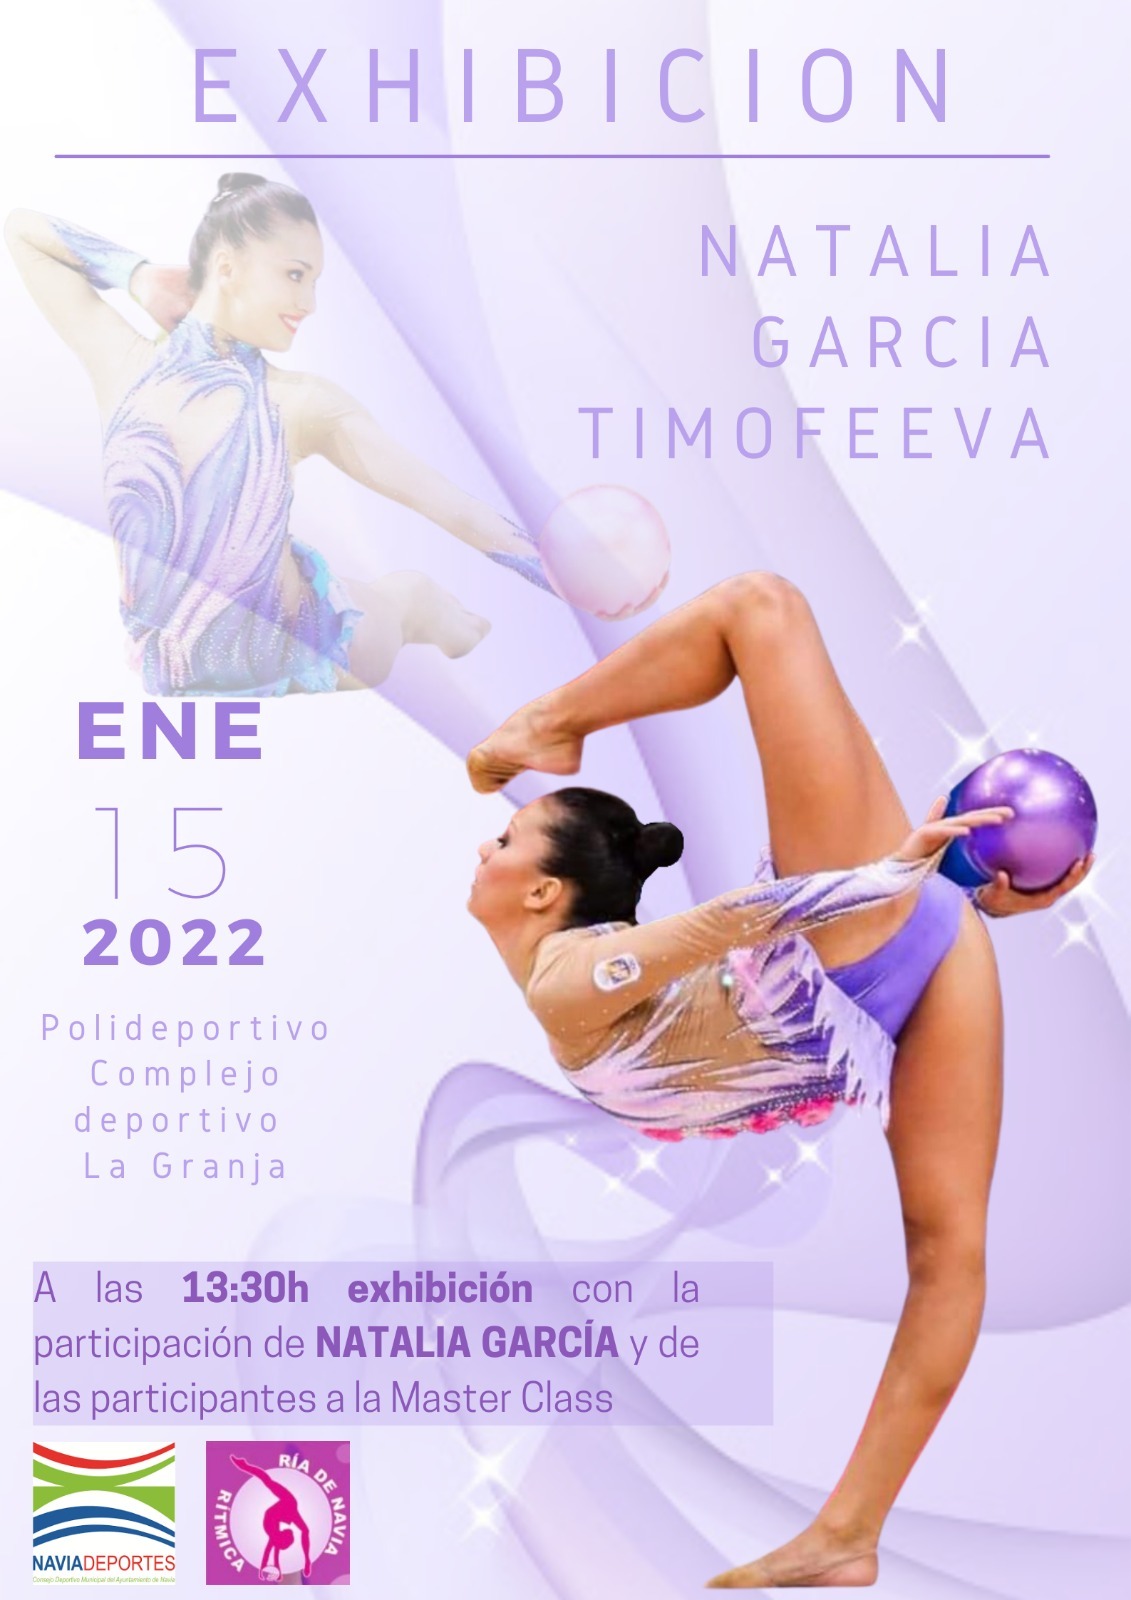 Exhibición de la Ex-Gimnasta Internacional Natalia Timofeeva el sábado en Navia